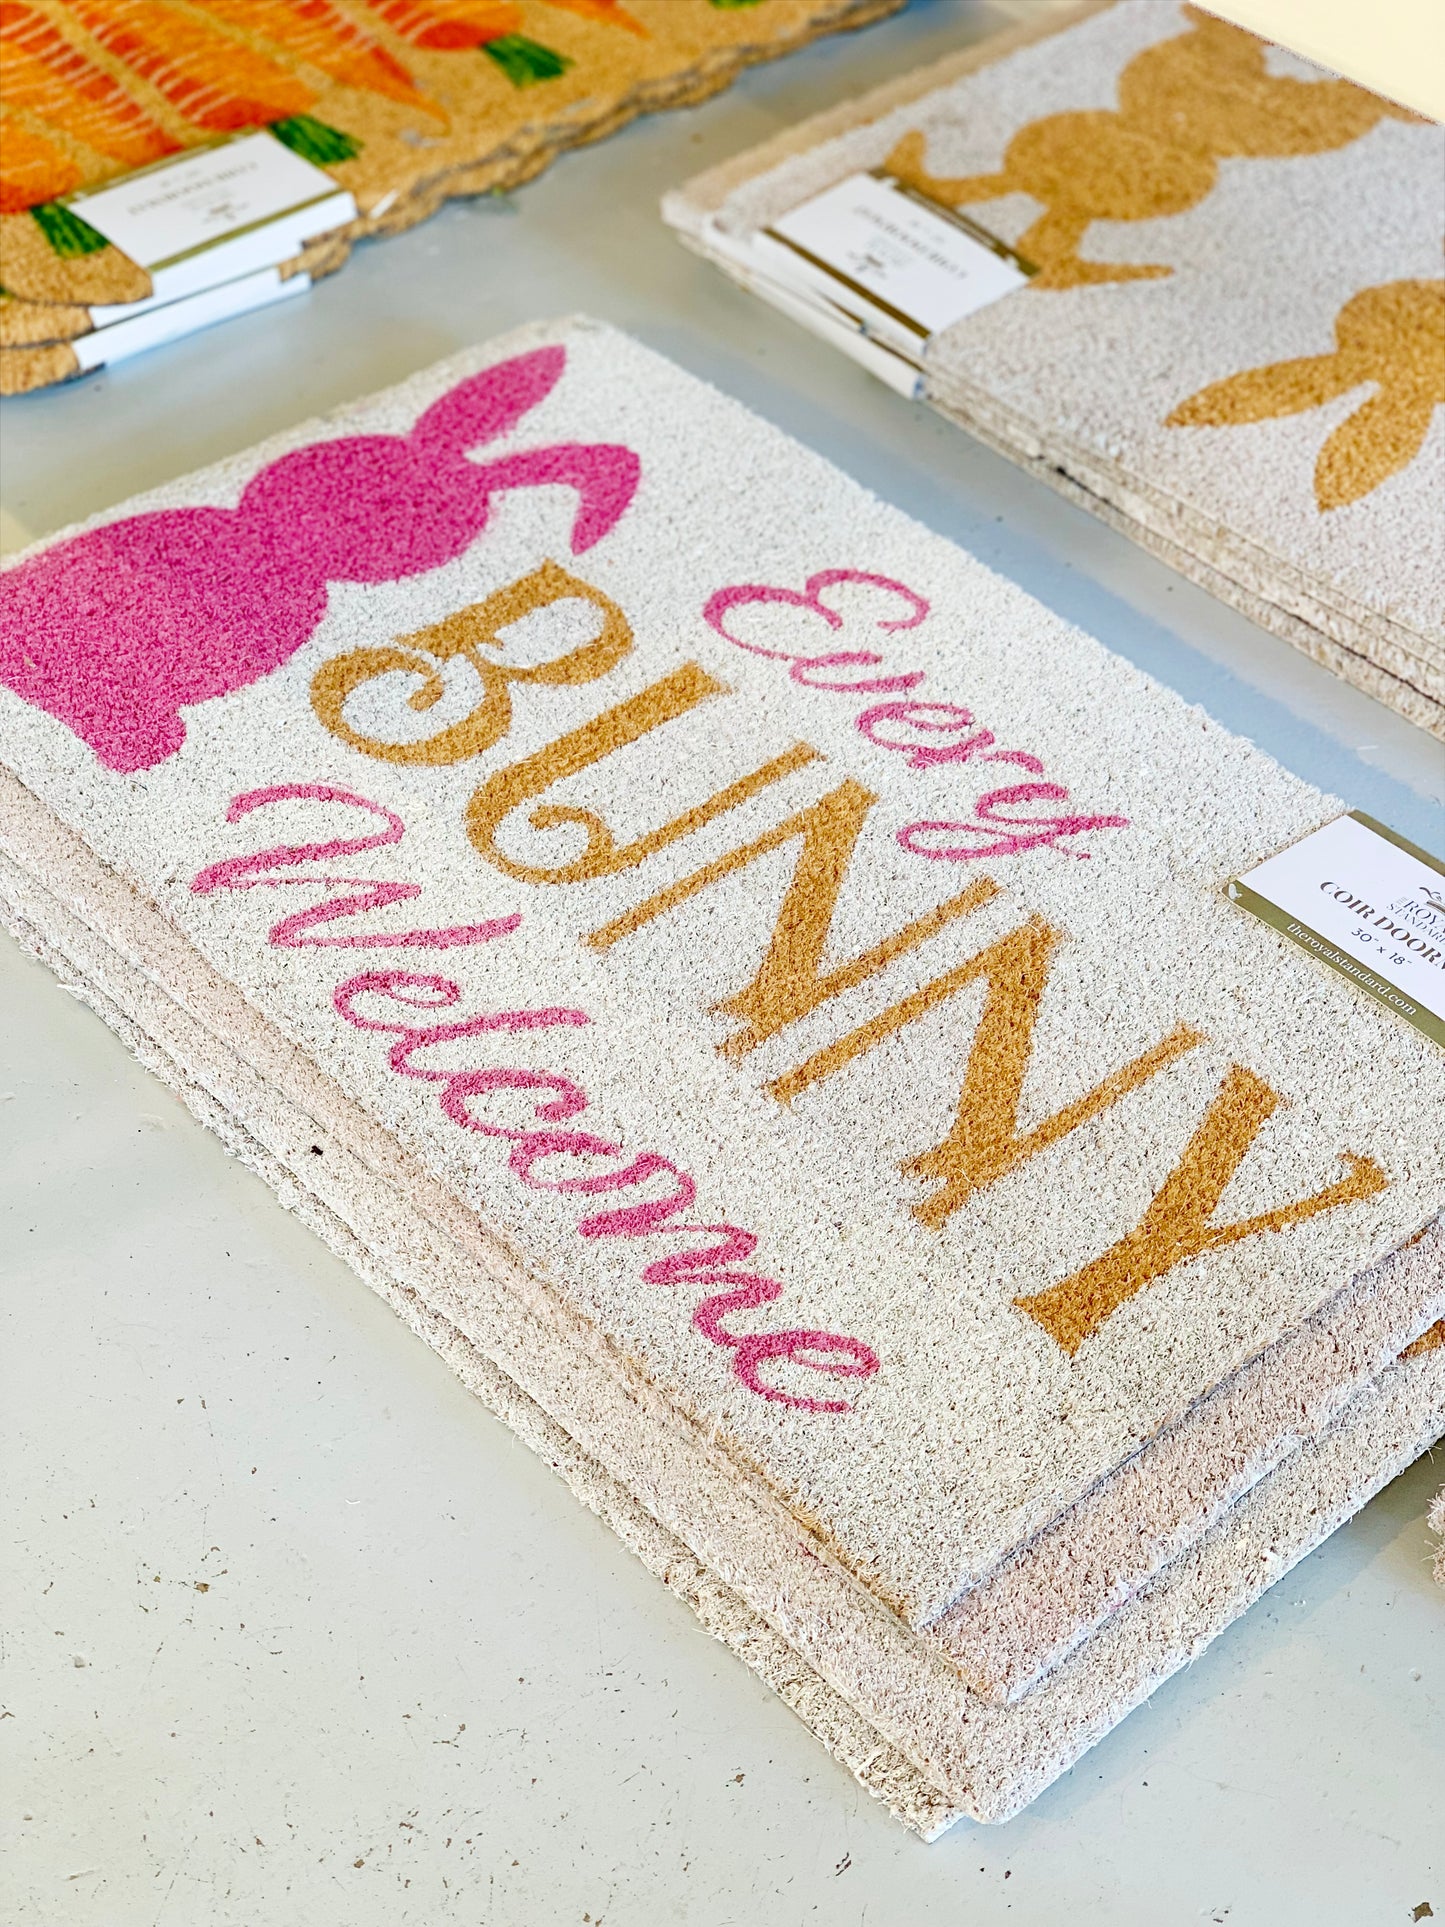 Every Bunny Welcome Coir Doormat